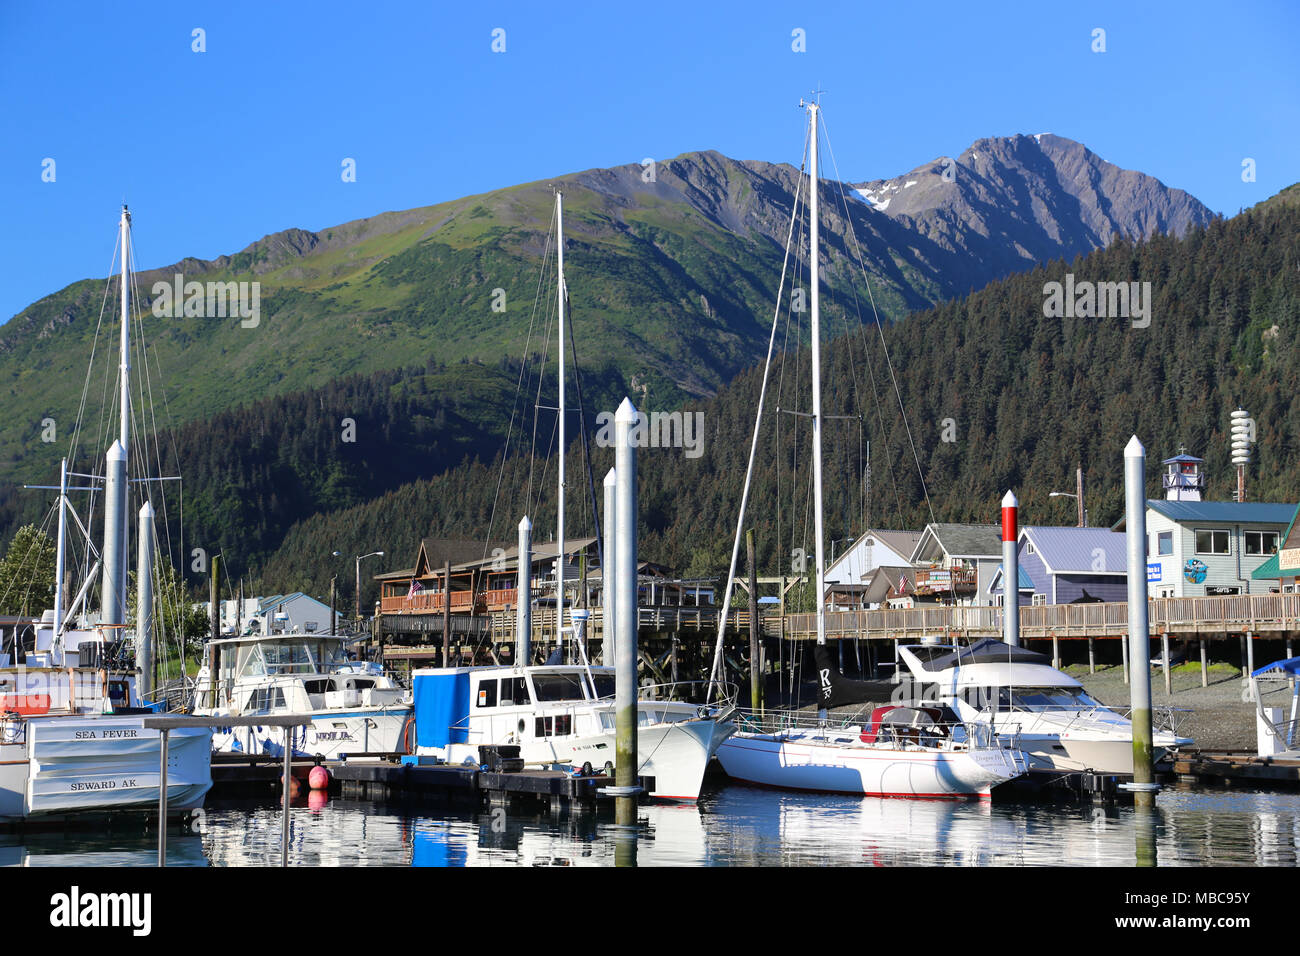 Boats in harbor and marina in the coastal Alaska mountain town of Seward Stock Photo